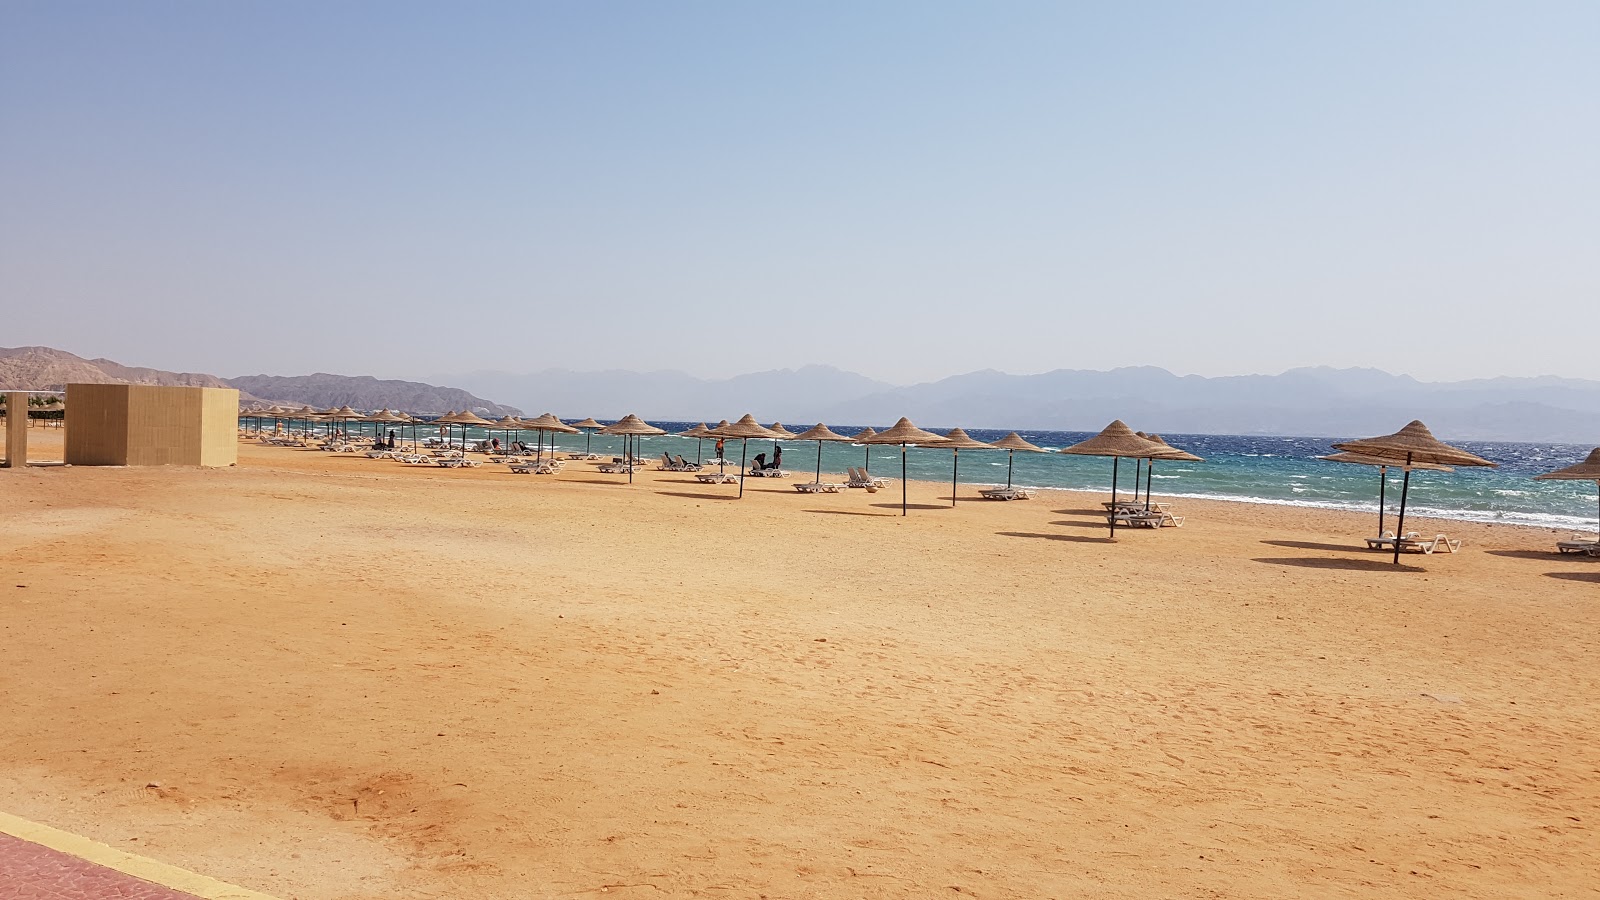 Fotografija Saladin Hotel Taba podprto z obalami